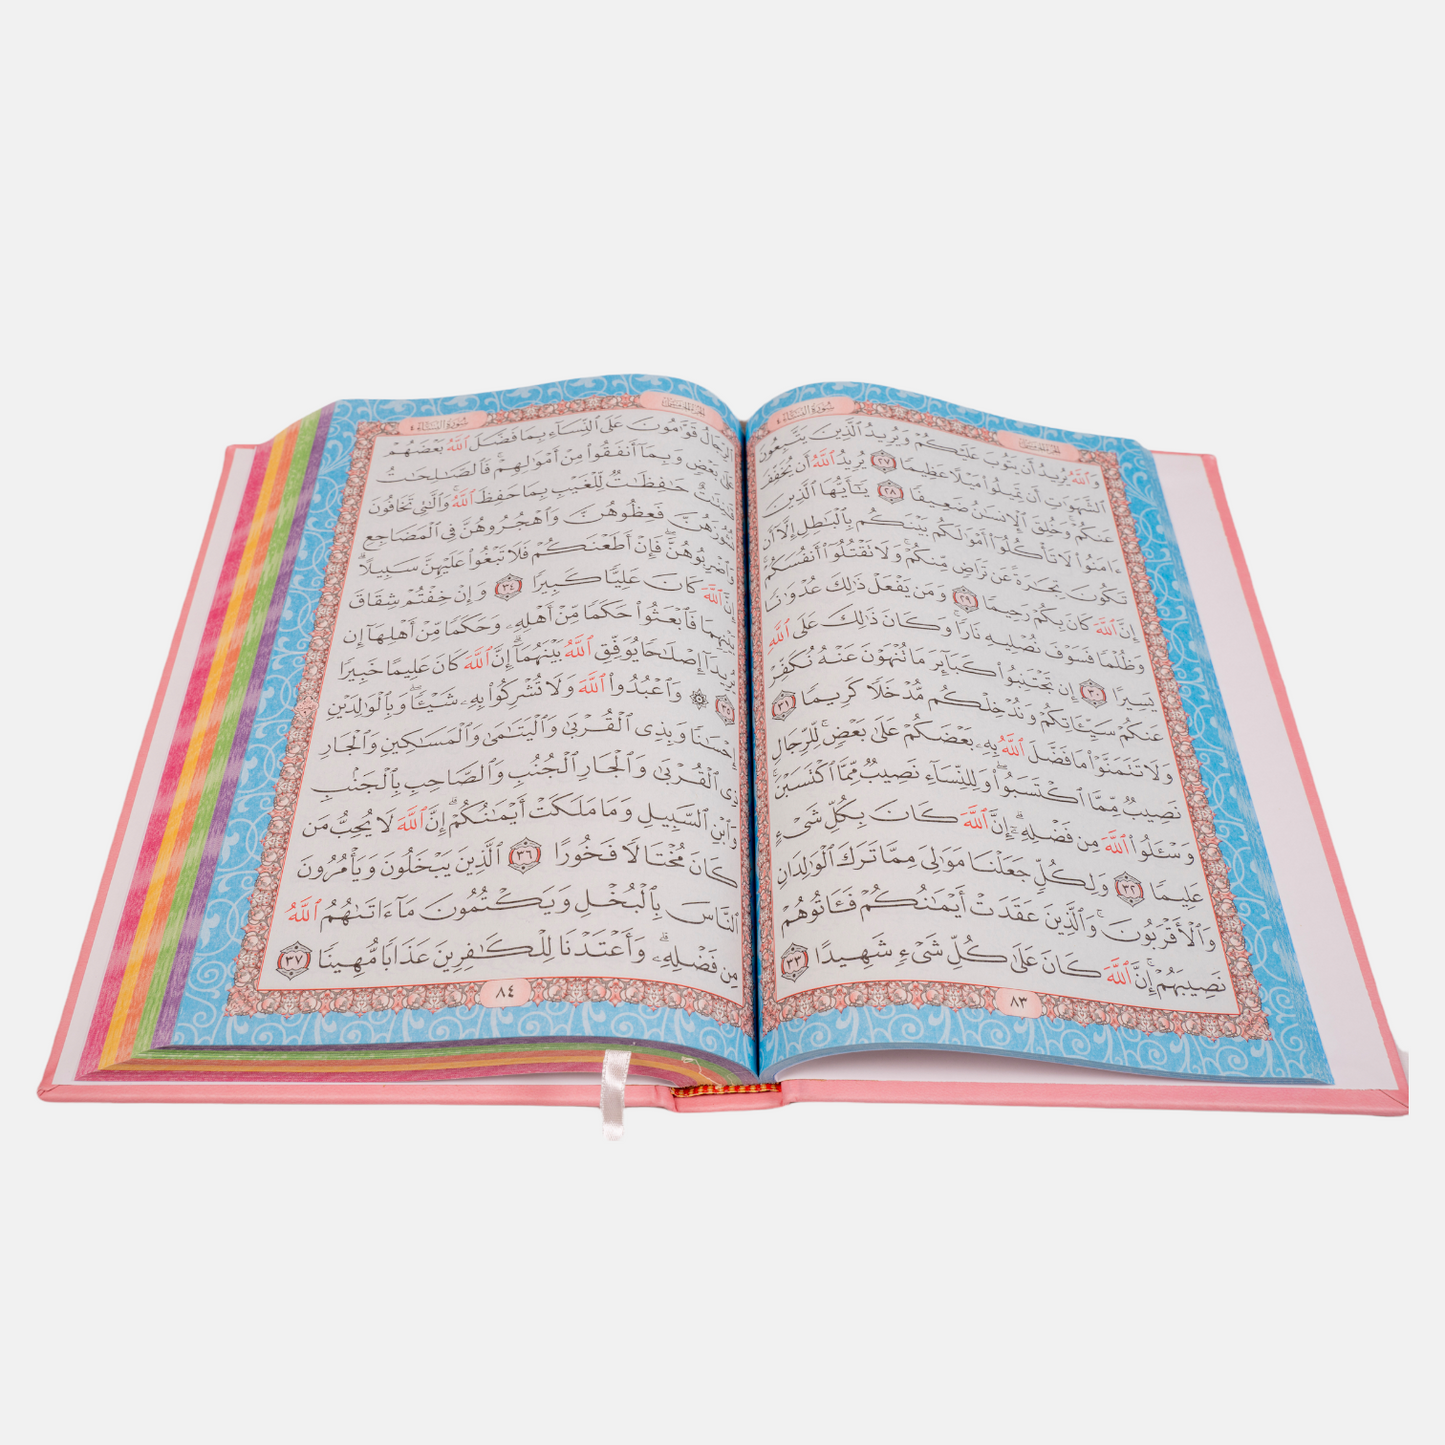 The Rainbow Qur'an